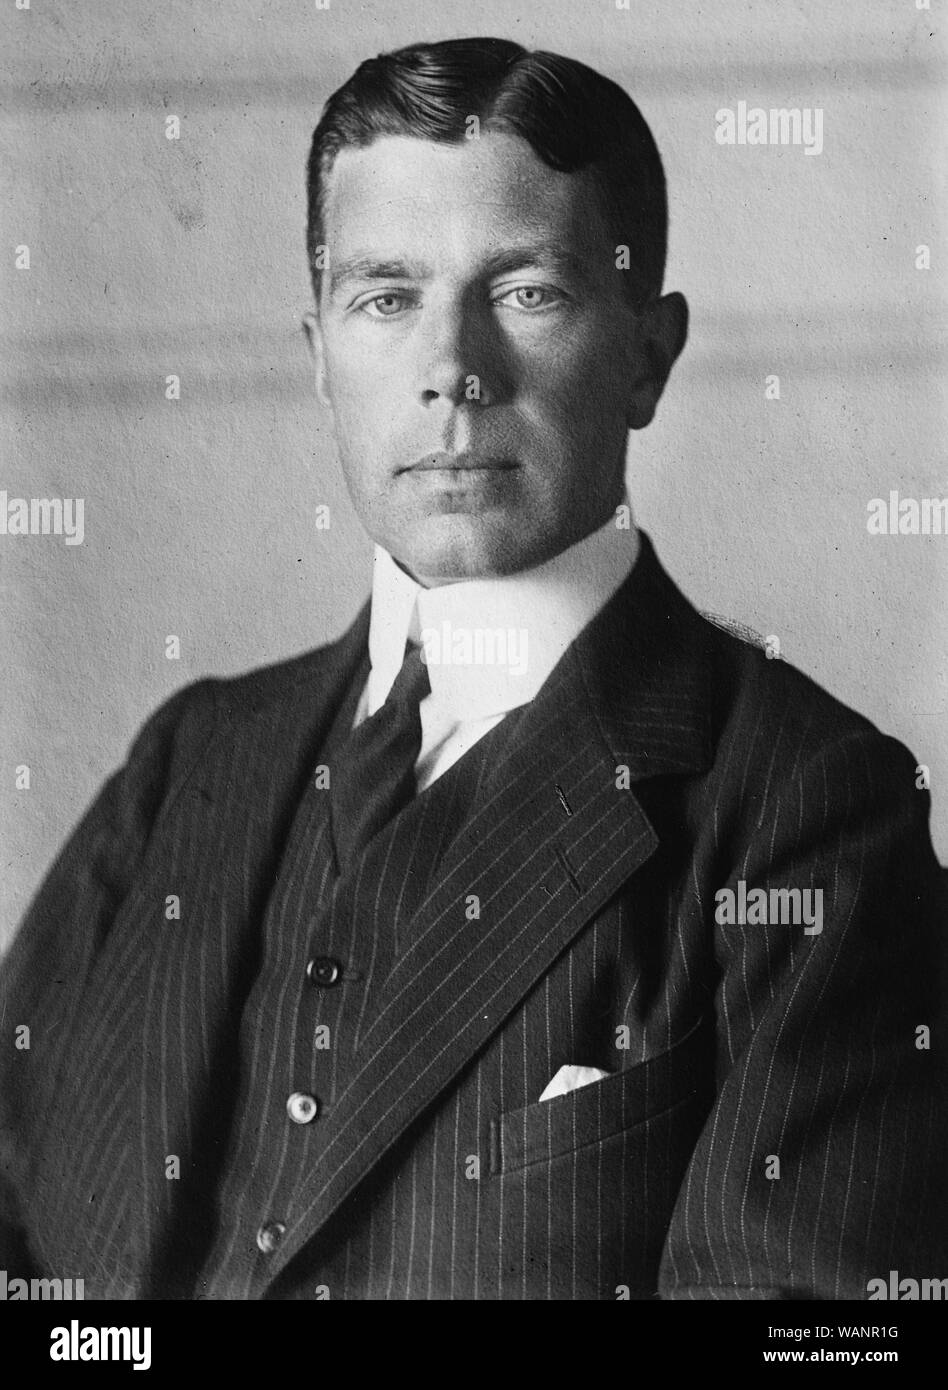 Le Prince Héritier Gustave Adolphe de Suède (1882-1973). En 1950, il devrait succéder à son père, le roi Gustave V, Roi de Suède. Banque D'Images